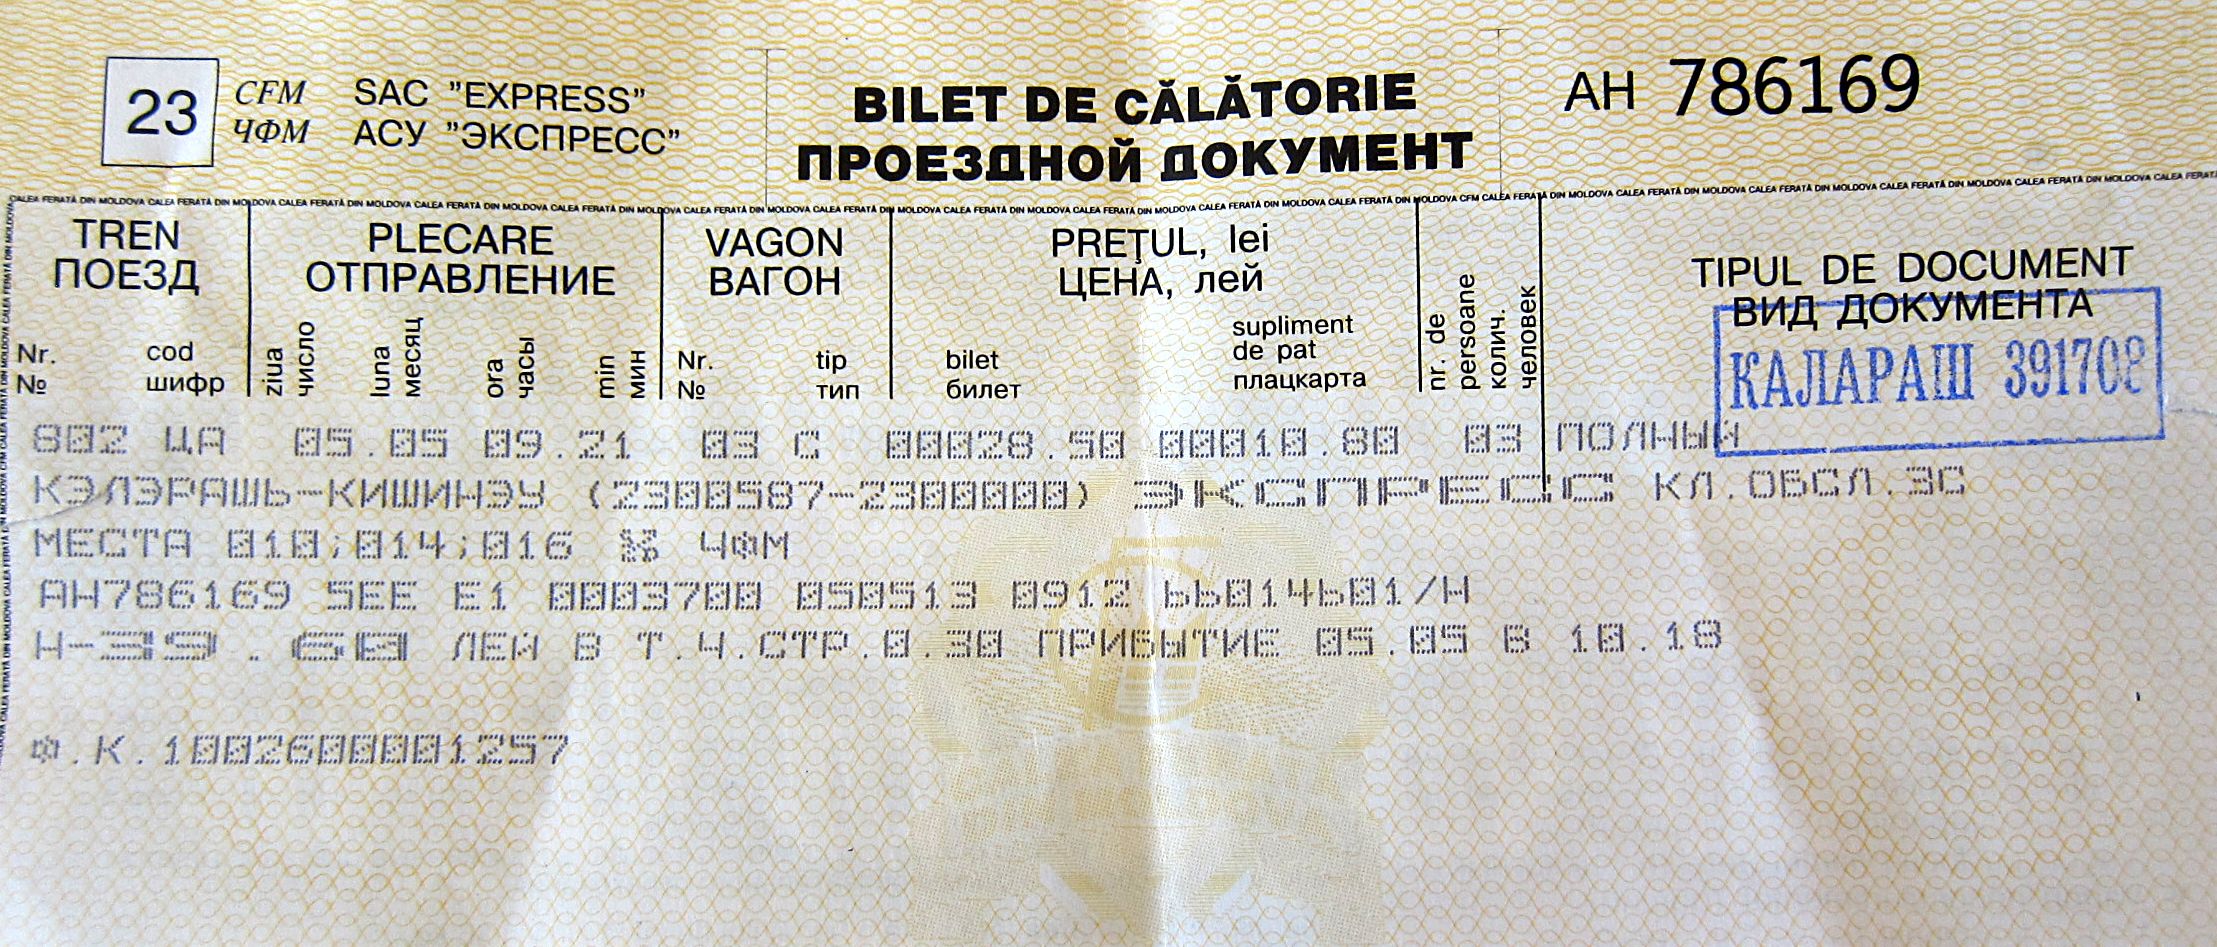 biletele eliberate călătorilor de Gara Feroviară din Călăraşi.